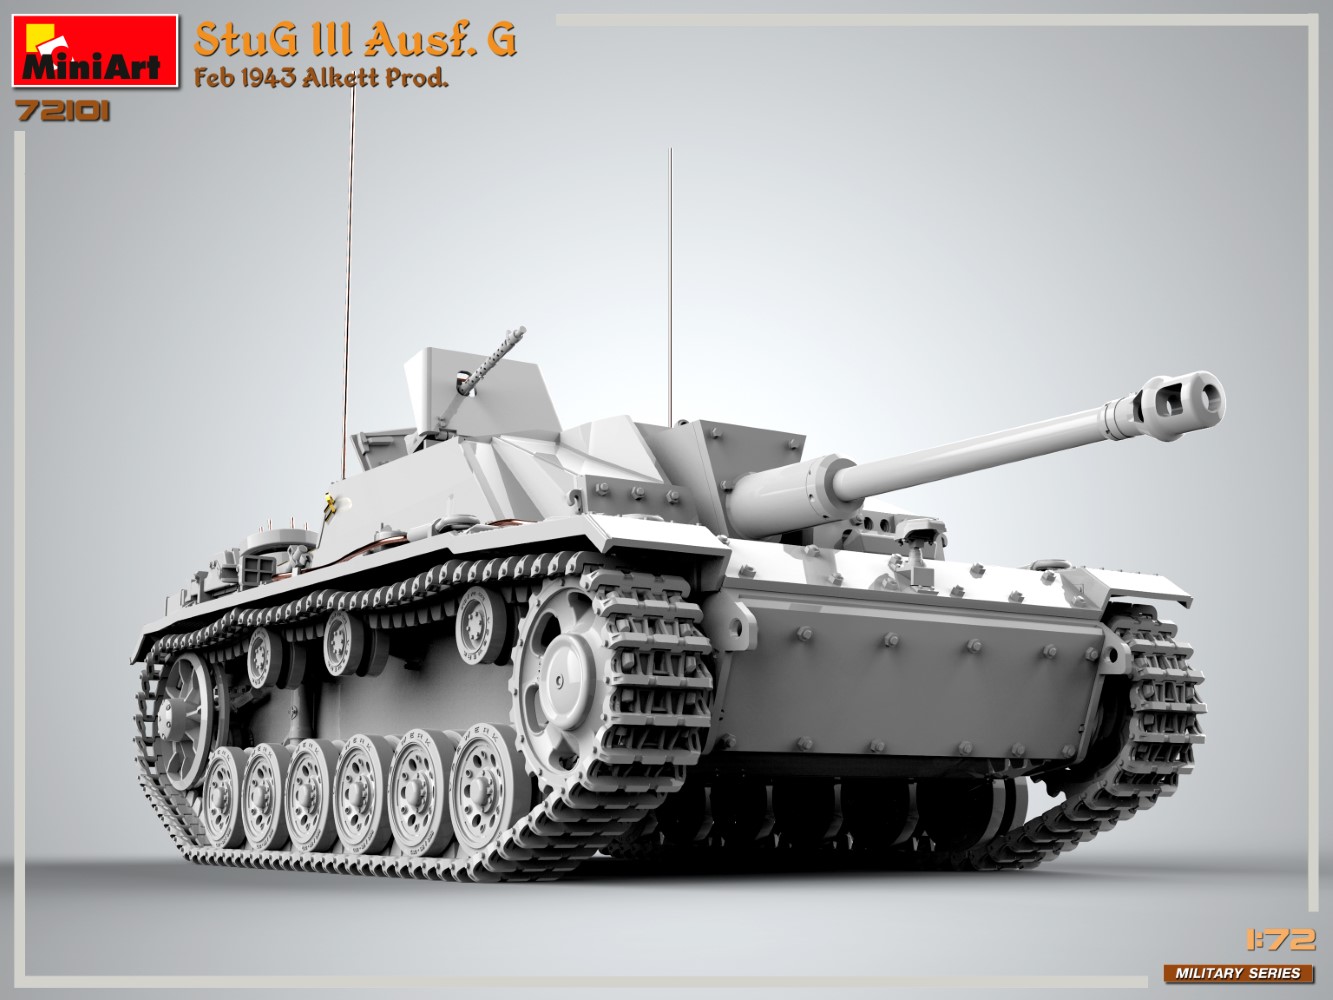 【予約する】　1/72　Ⅲ号突撃砲Ausf.G アルケット社製 1943年2月 - ウインドウを閉じる